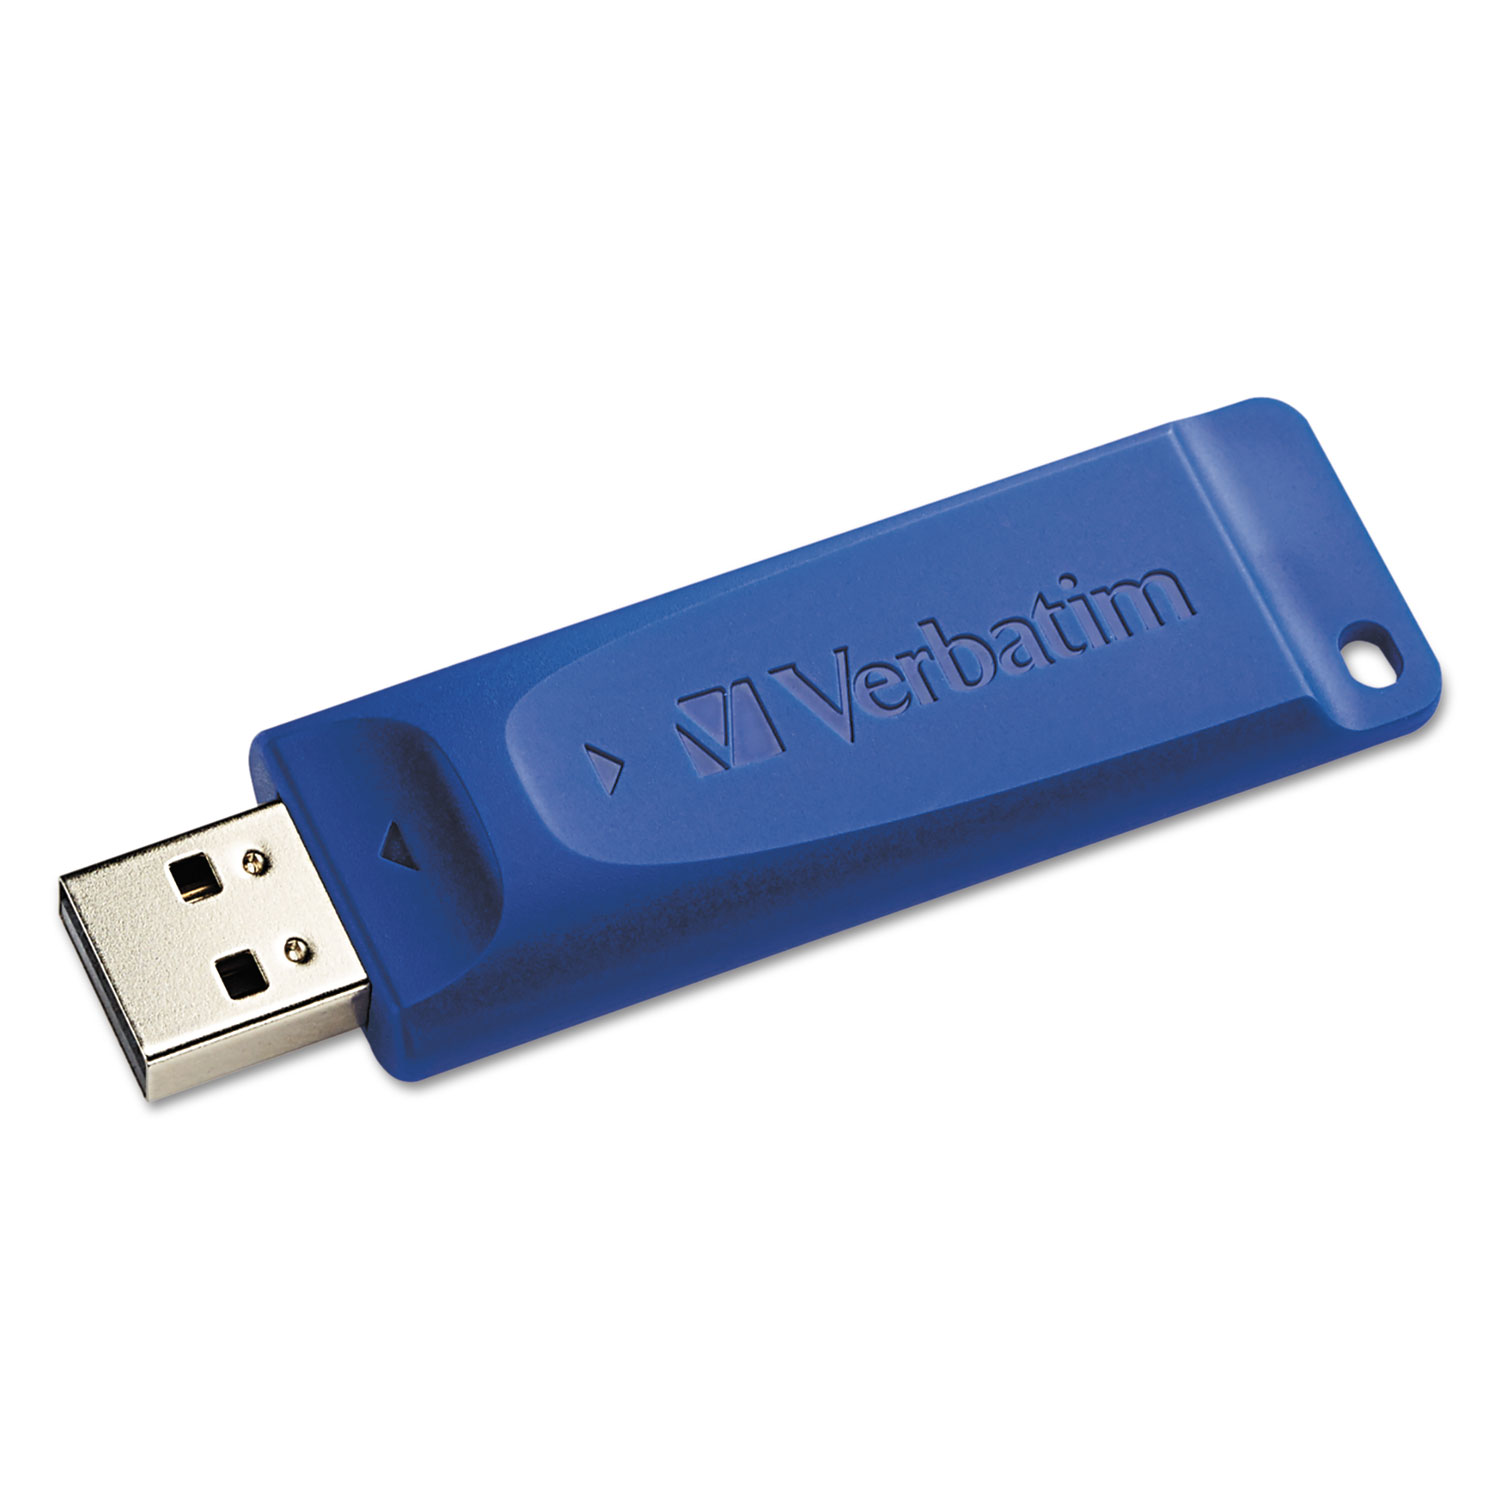 Classic USB 2.0 Flash Drive, 64GB, Blue